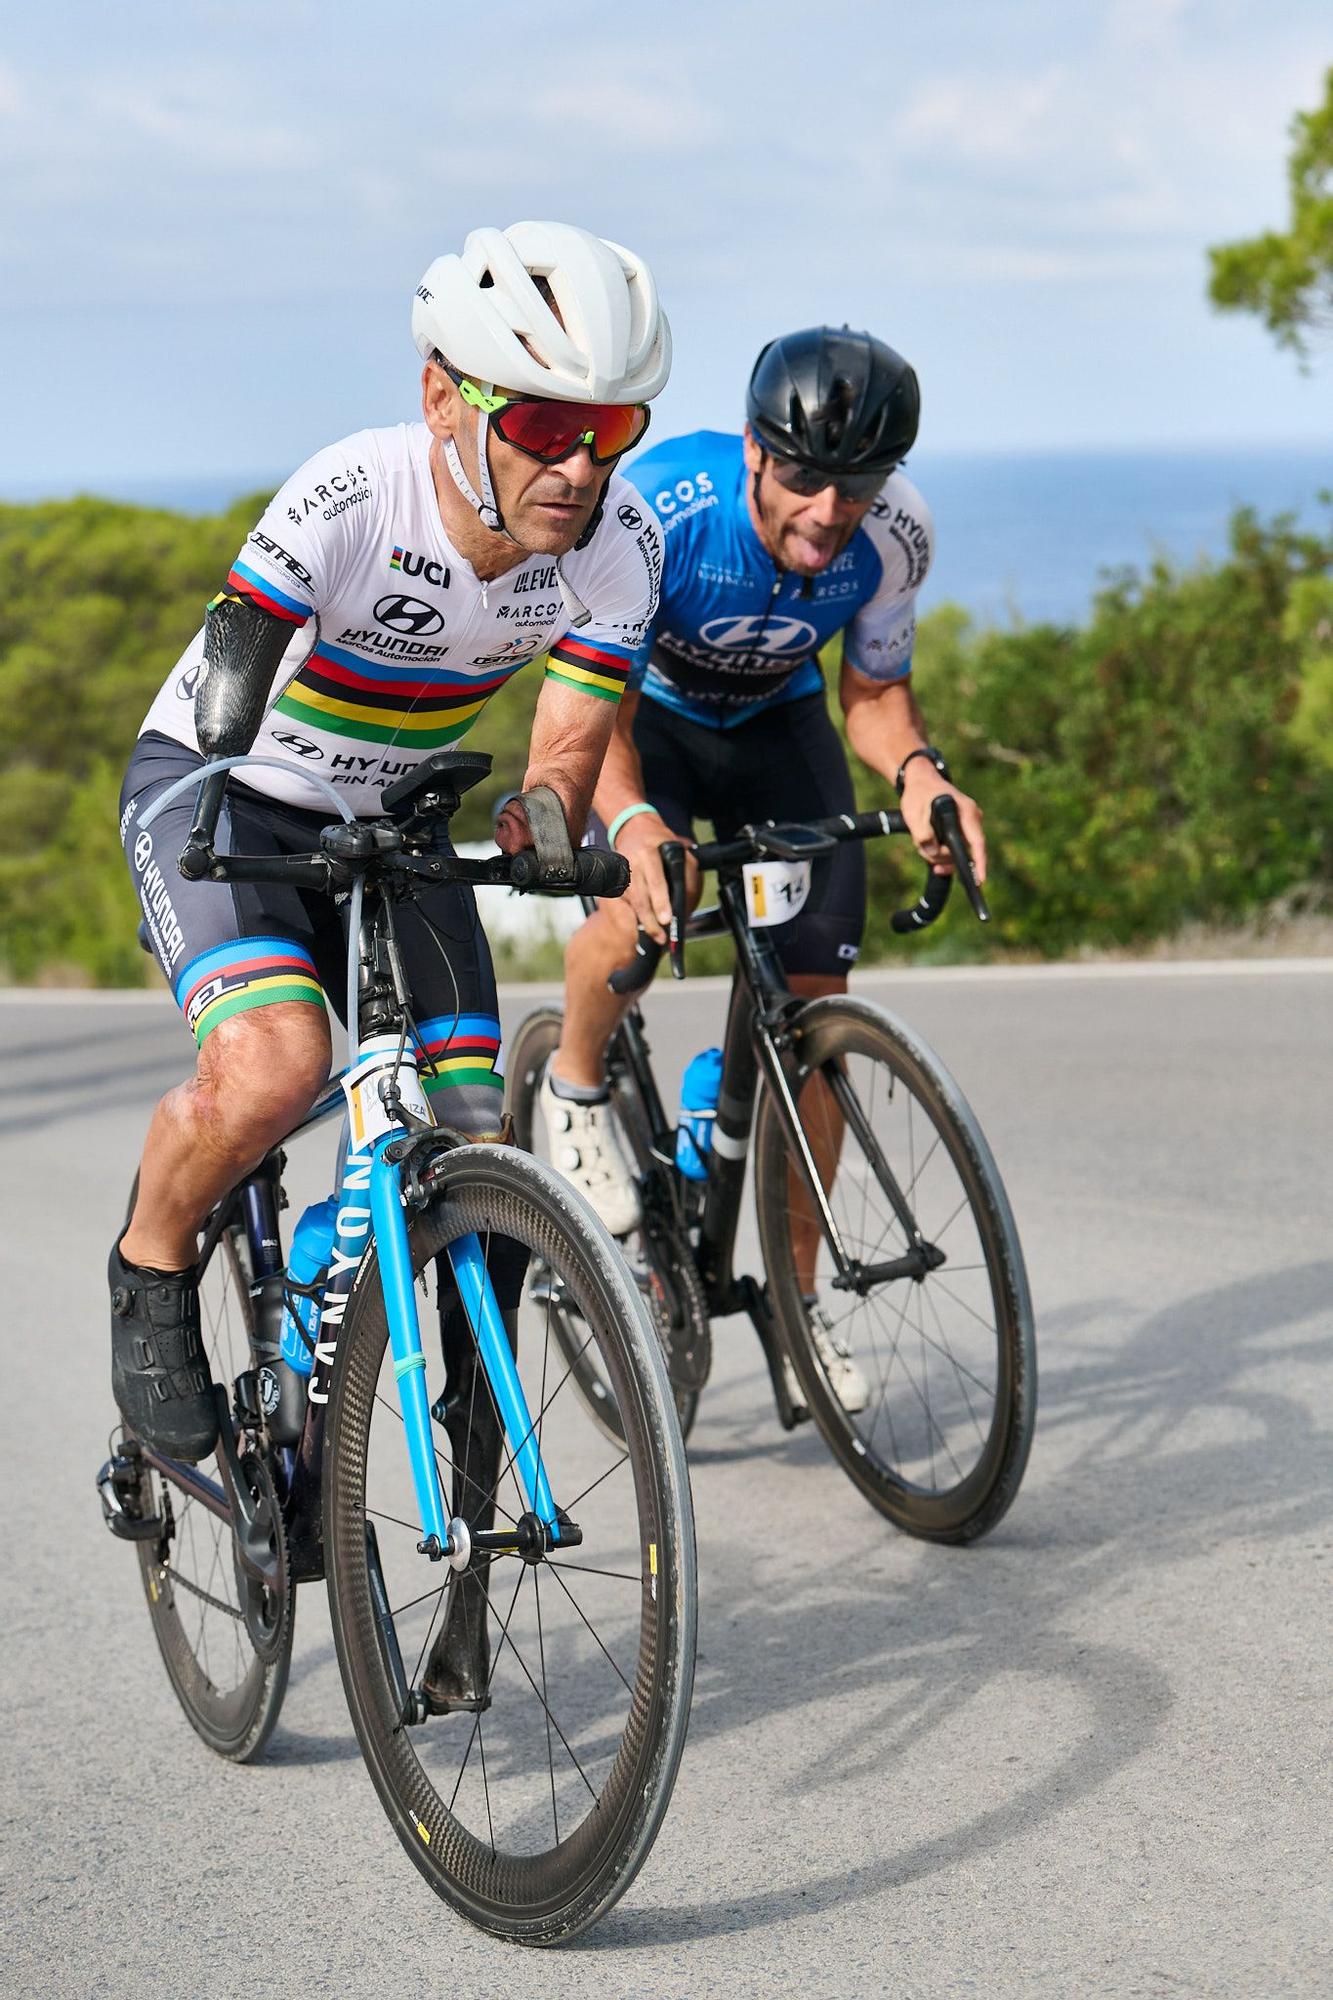 Todas las imágenes de la Vuelta Cicloturista a Ibiza Campagnolo